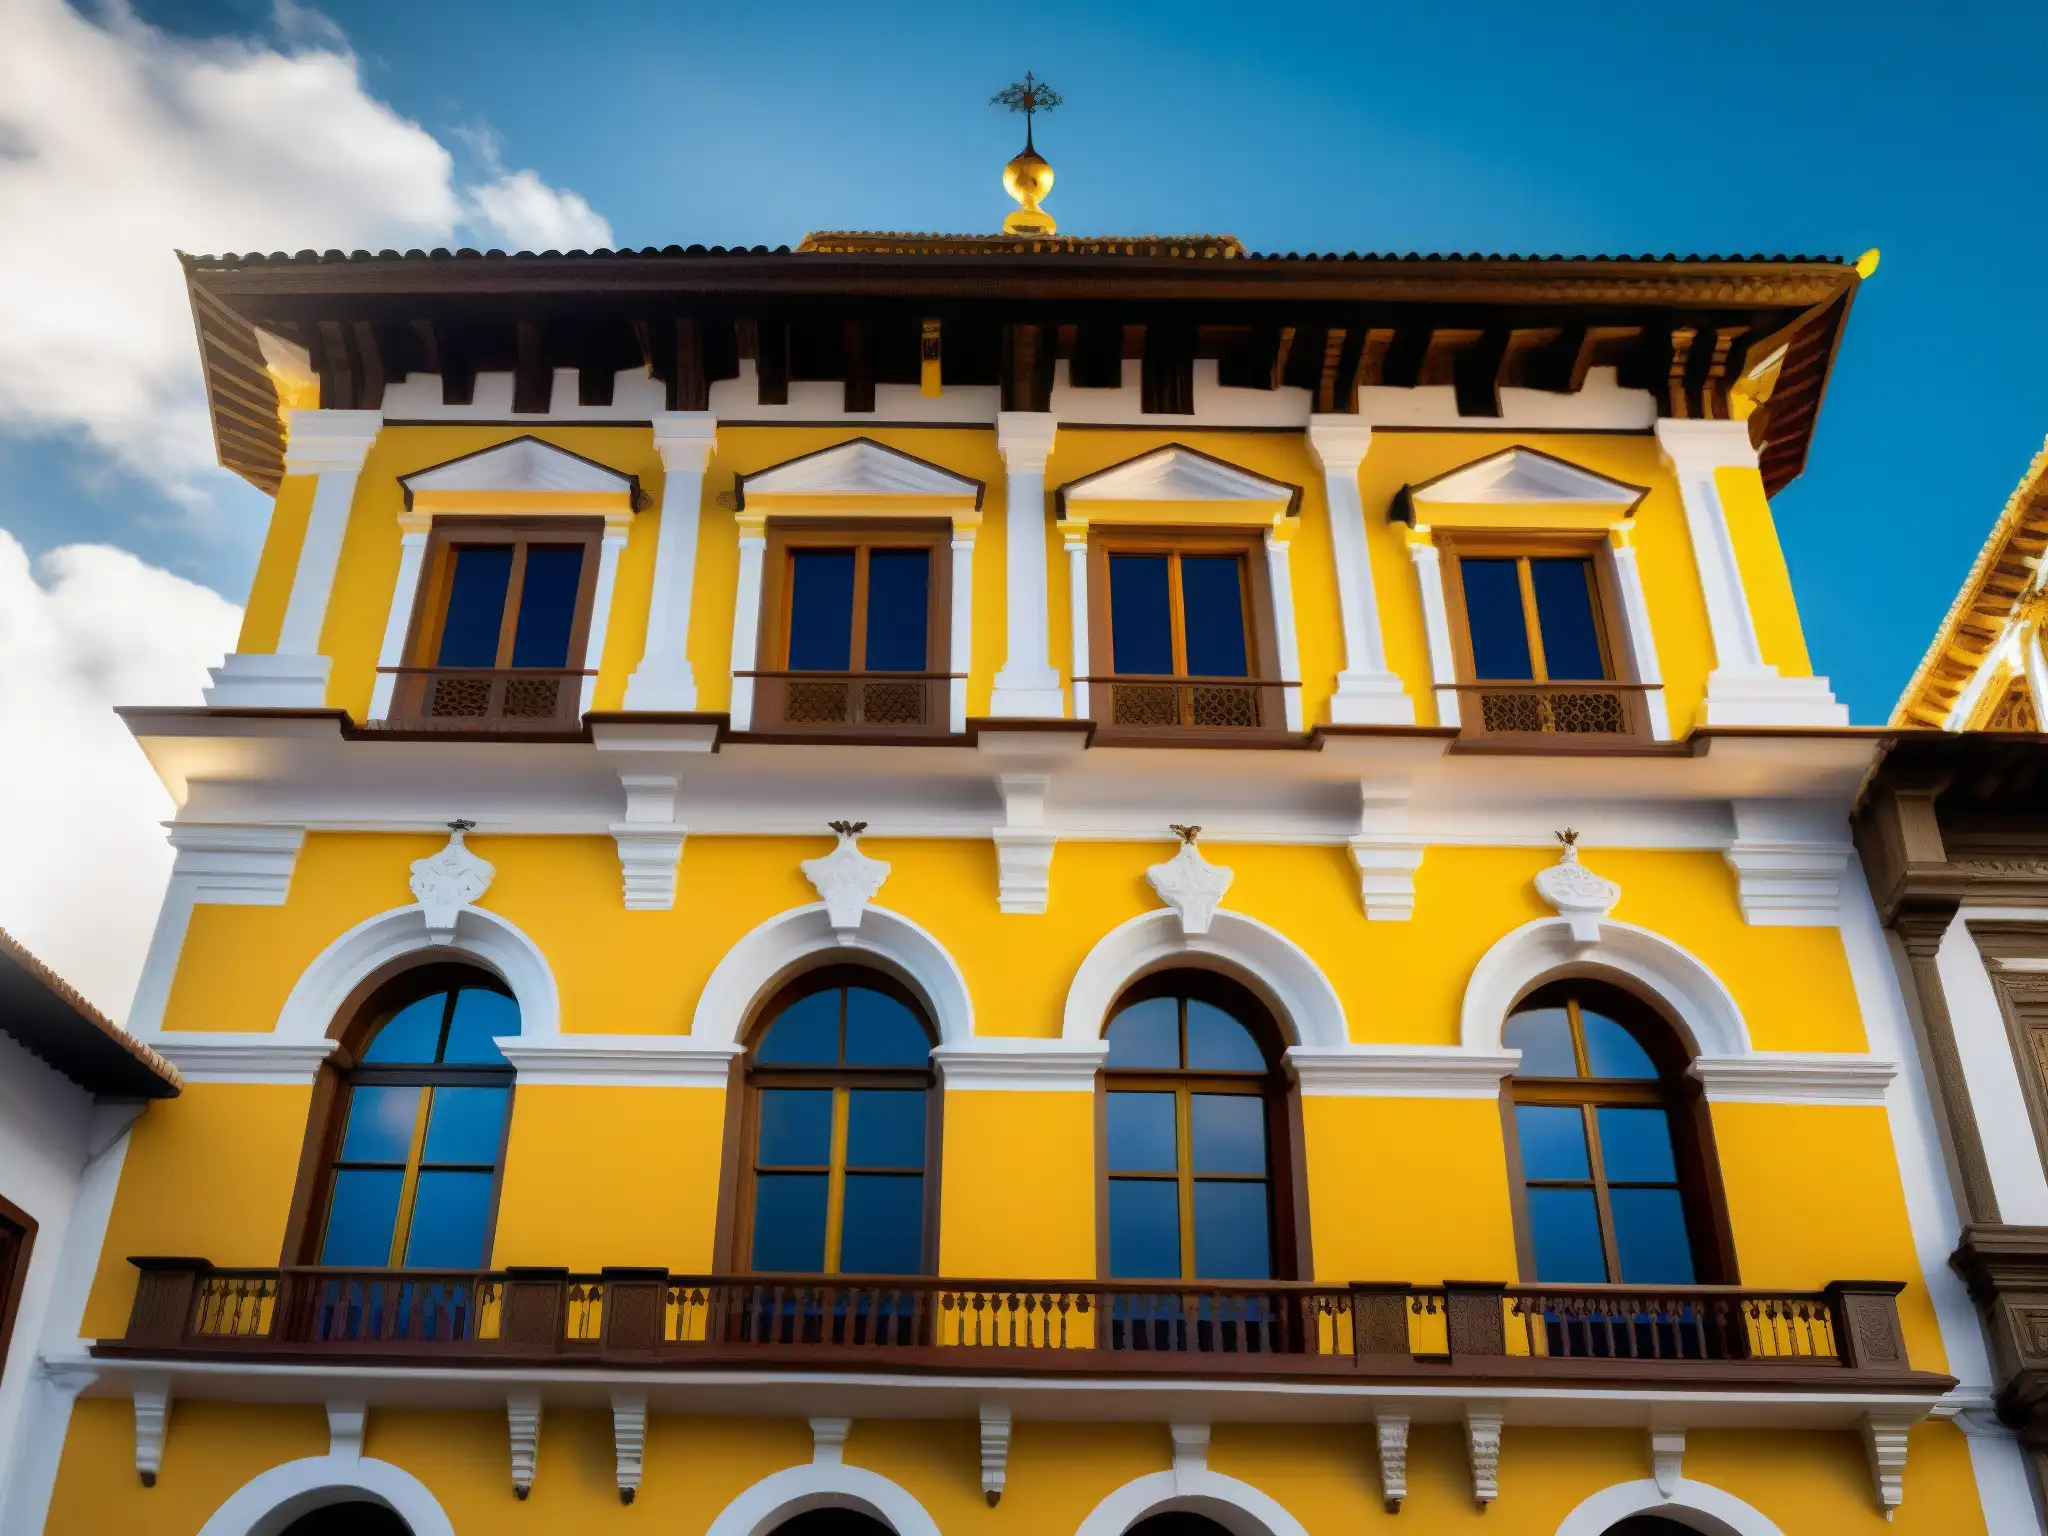 Detallada imagen del exterior de La Casa de los Espejos en Quito, Ecuador, resaltando su arquitectura única y su historia fantasmagórica